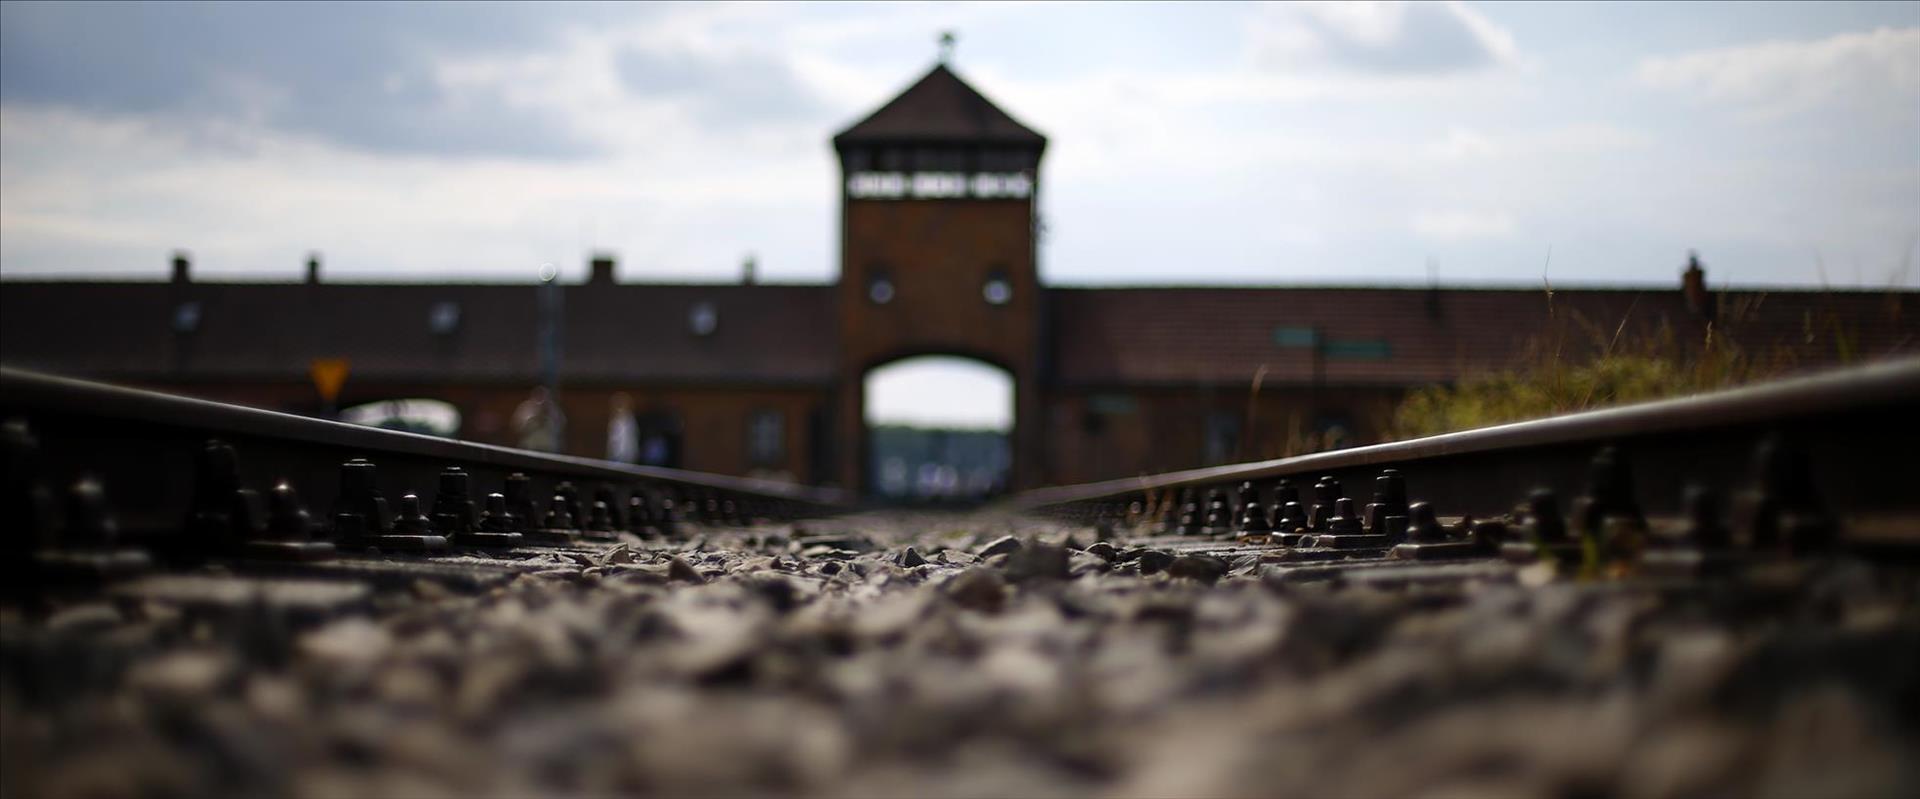 מחנה ההשמדה אושוויץ בירקנאו